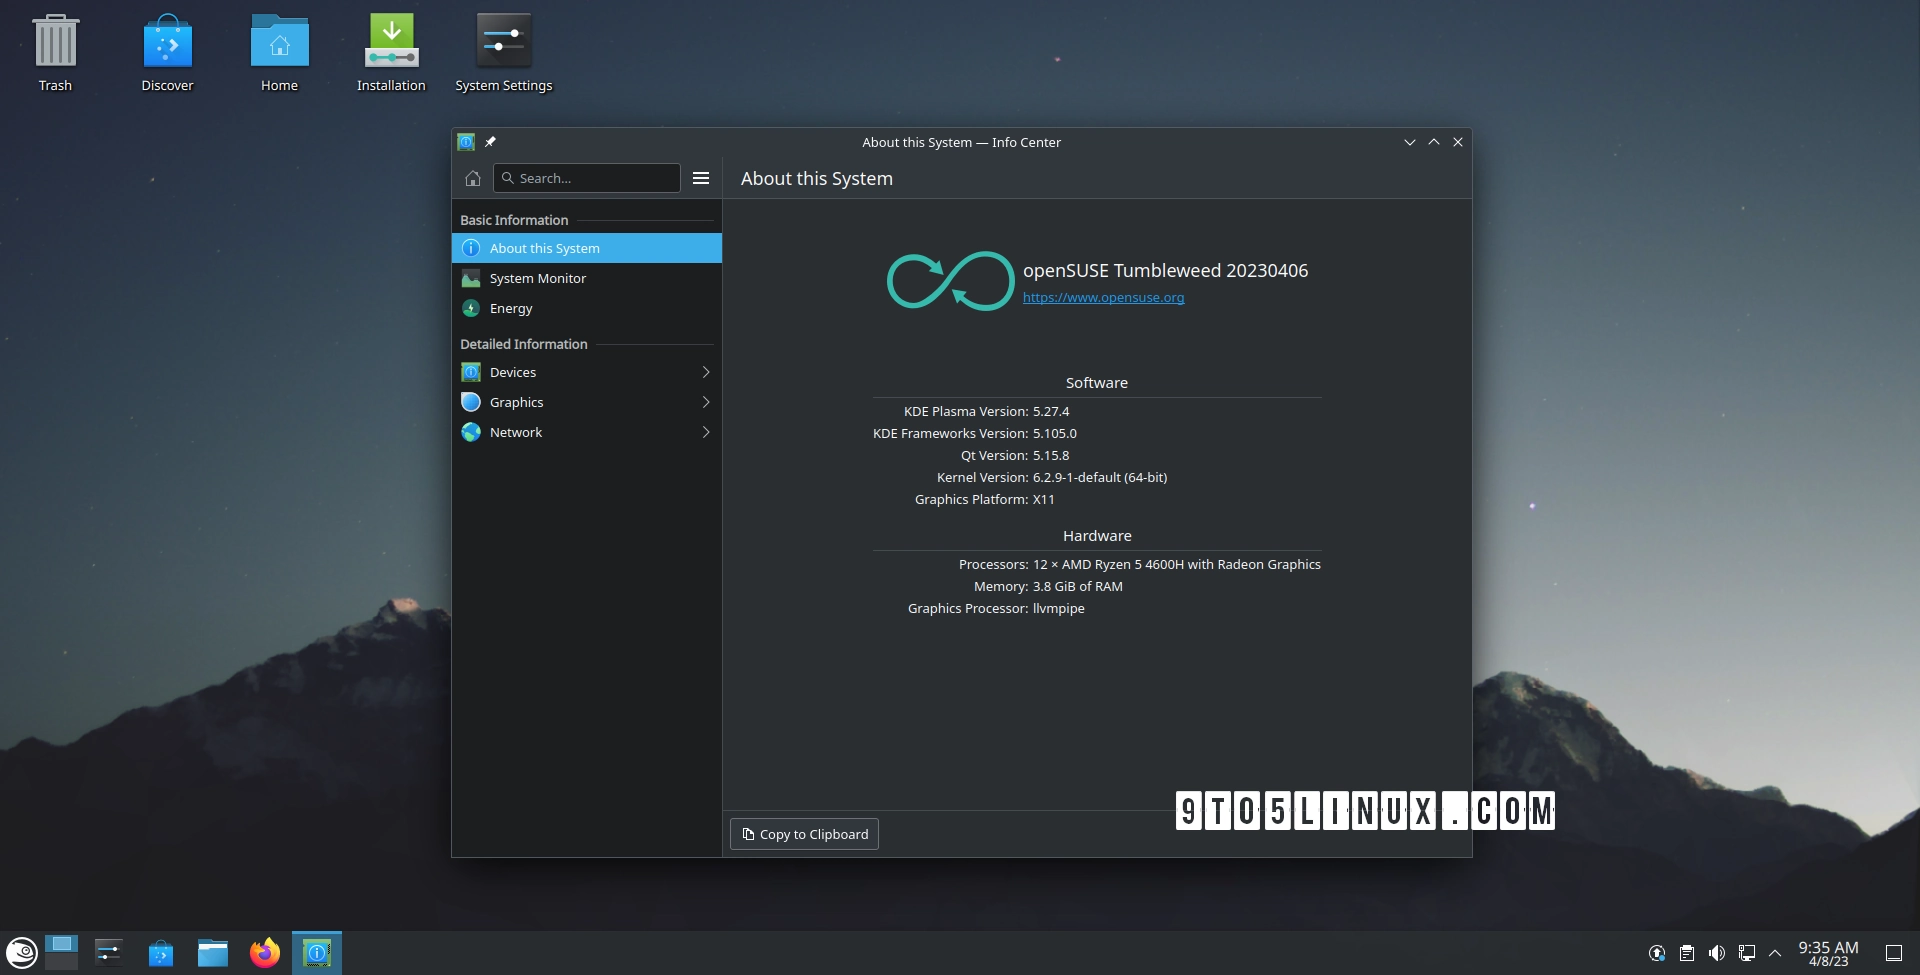 KDE Frameworks 5.105 Improves Support for Flatpak Apps, Updates Breeze Icon Theme